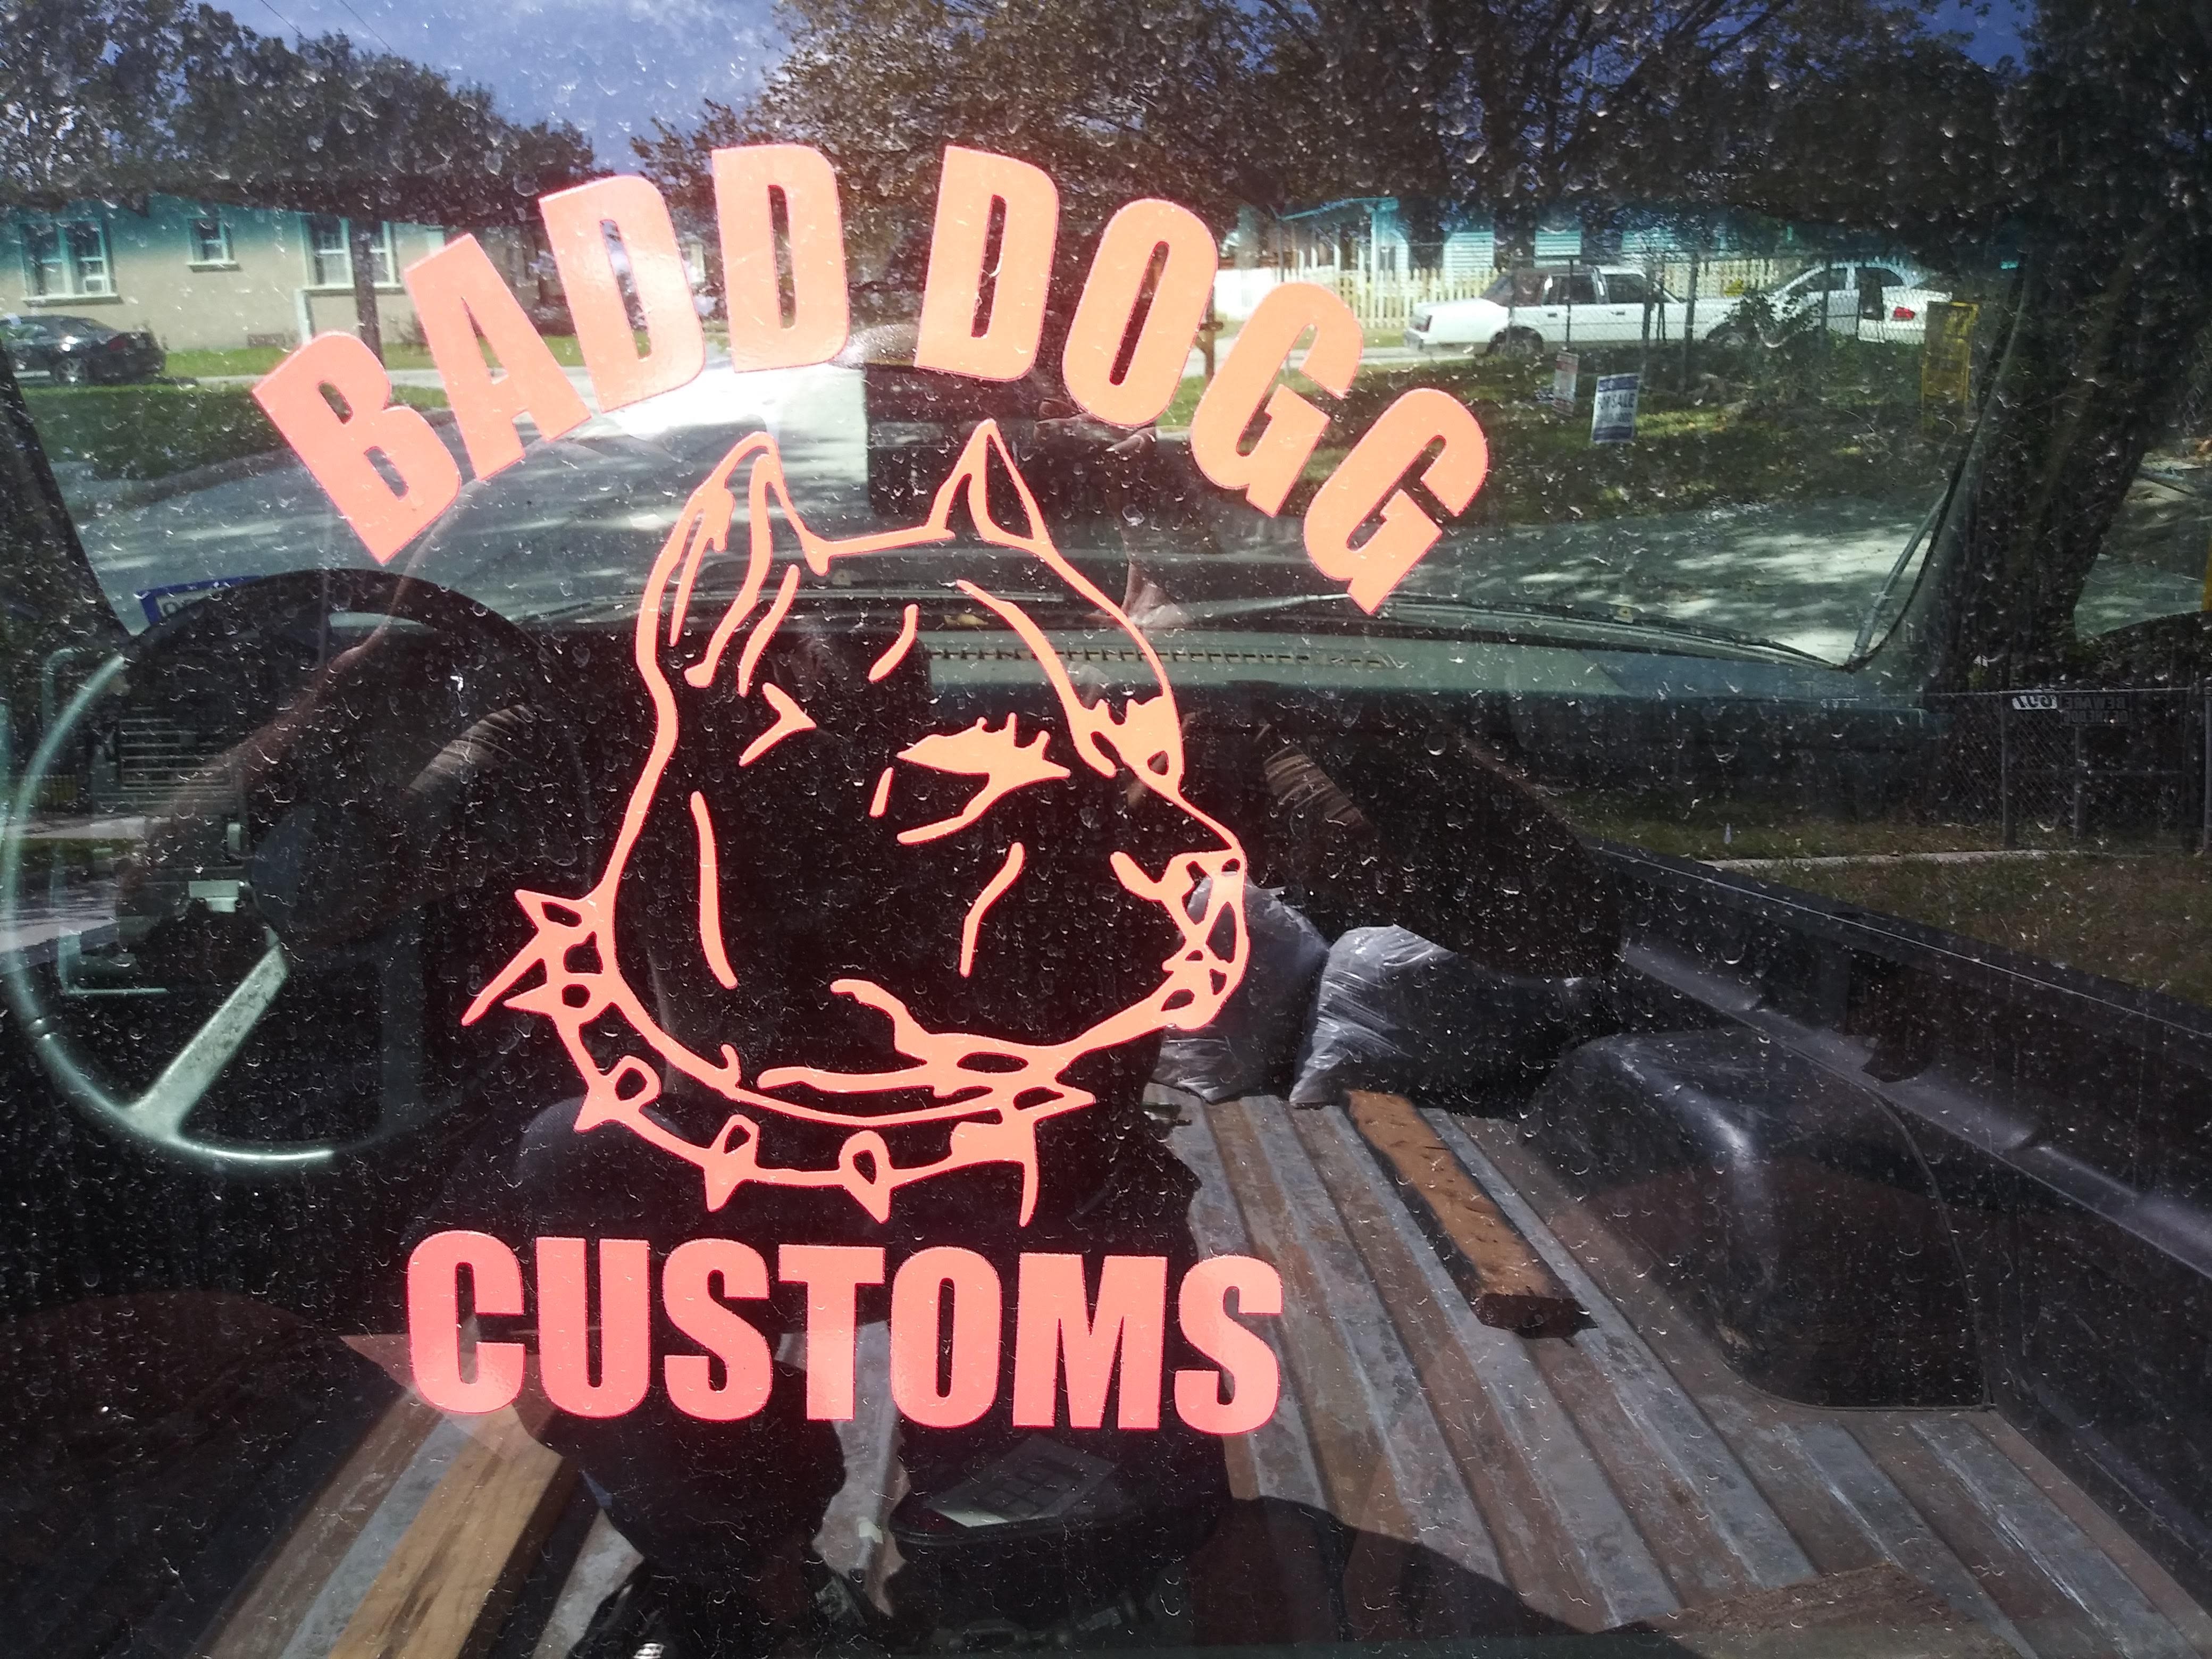 Badd Dogg Customs